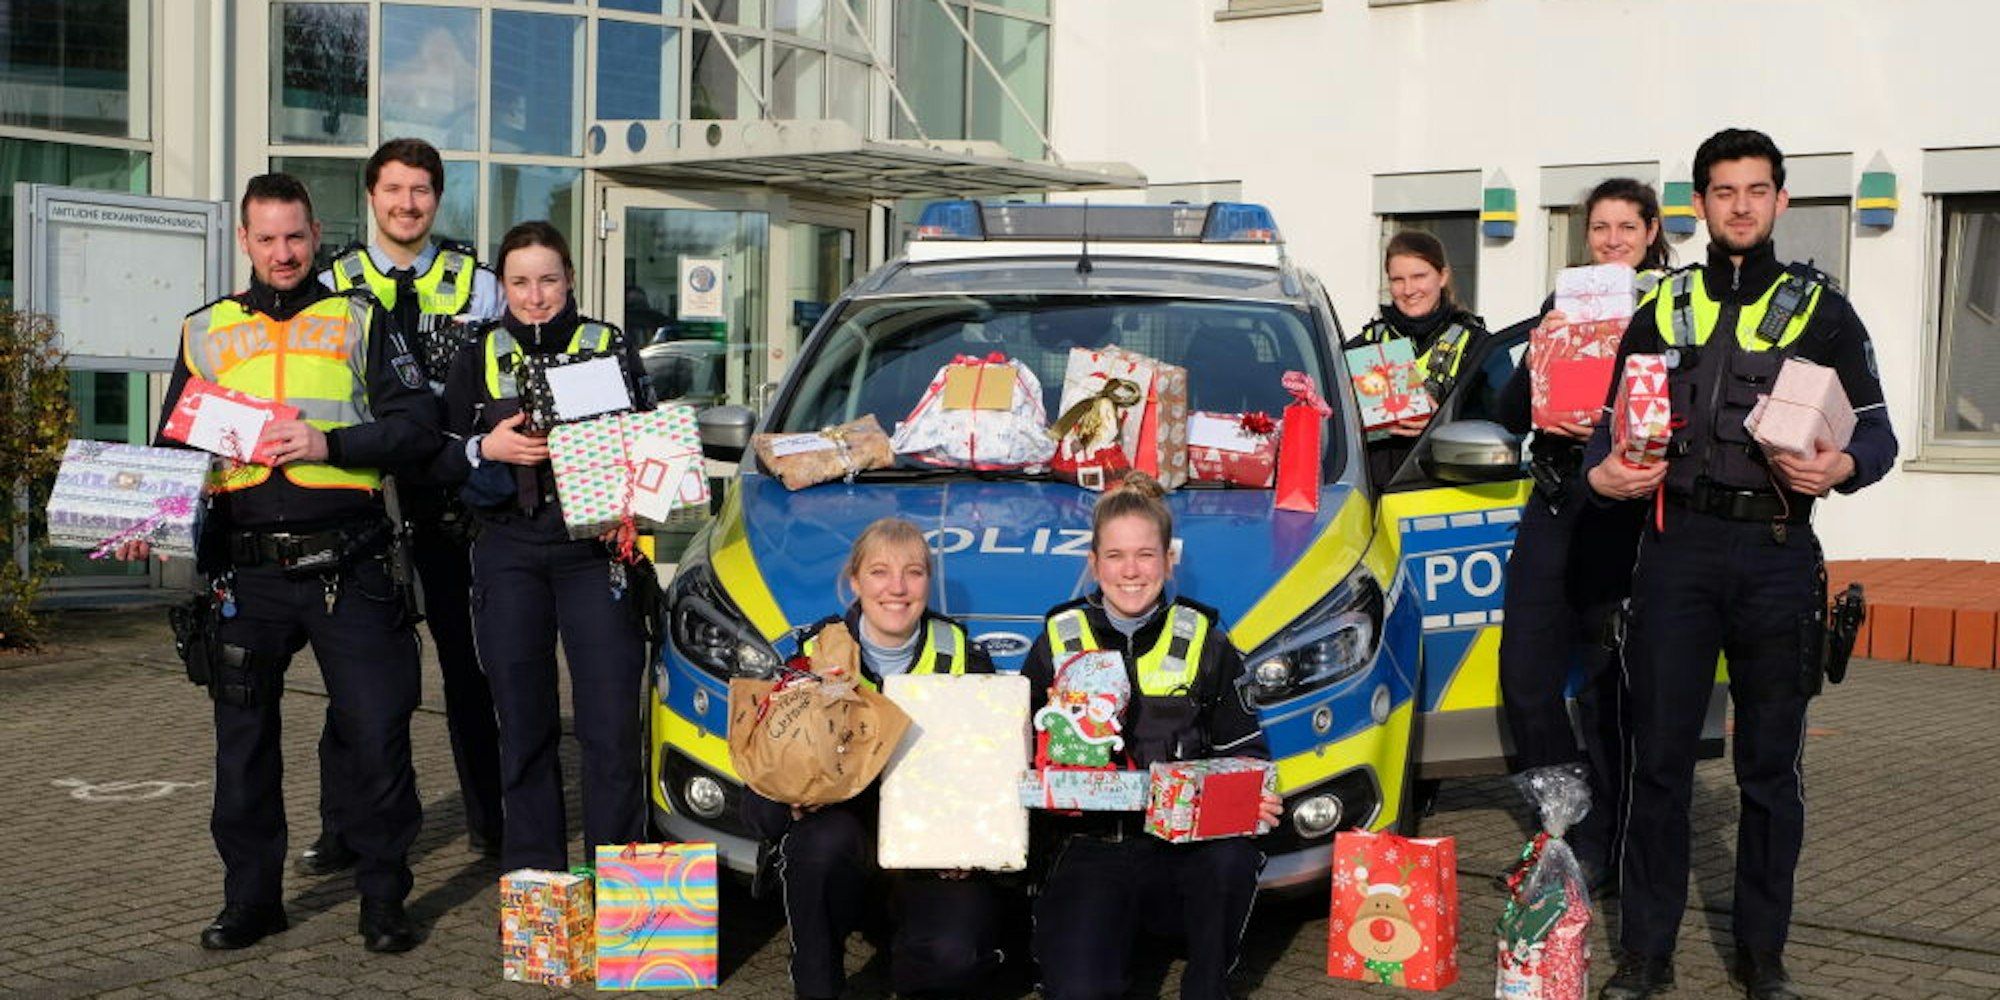 Als Helfer des Christkinds beteiligten sich erstmals Mitarbeitende der Kreispolizei bei einer Charity-Aktion.